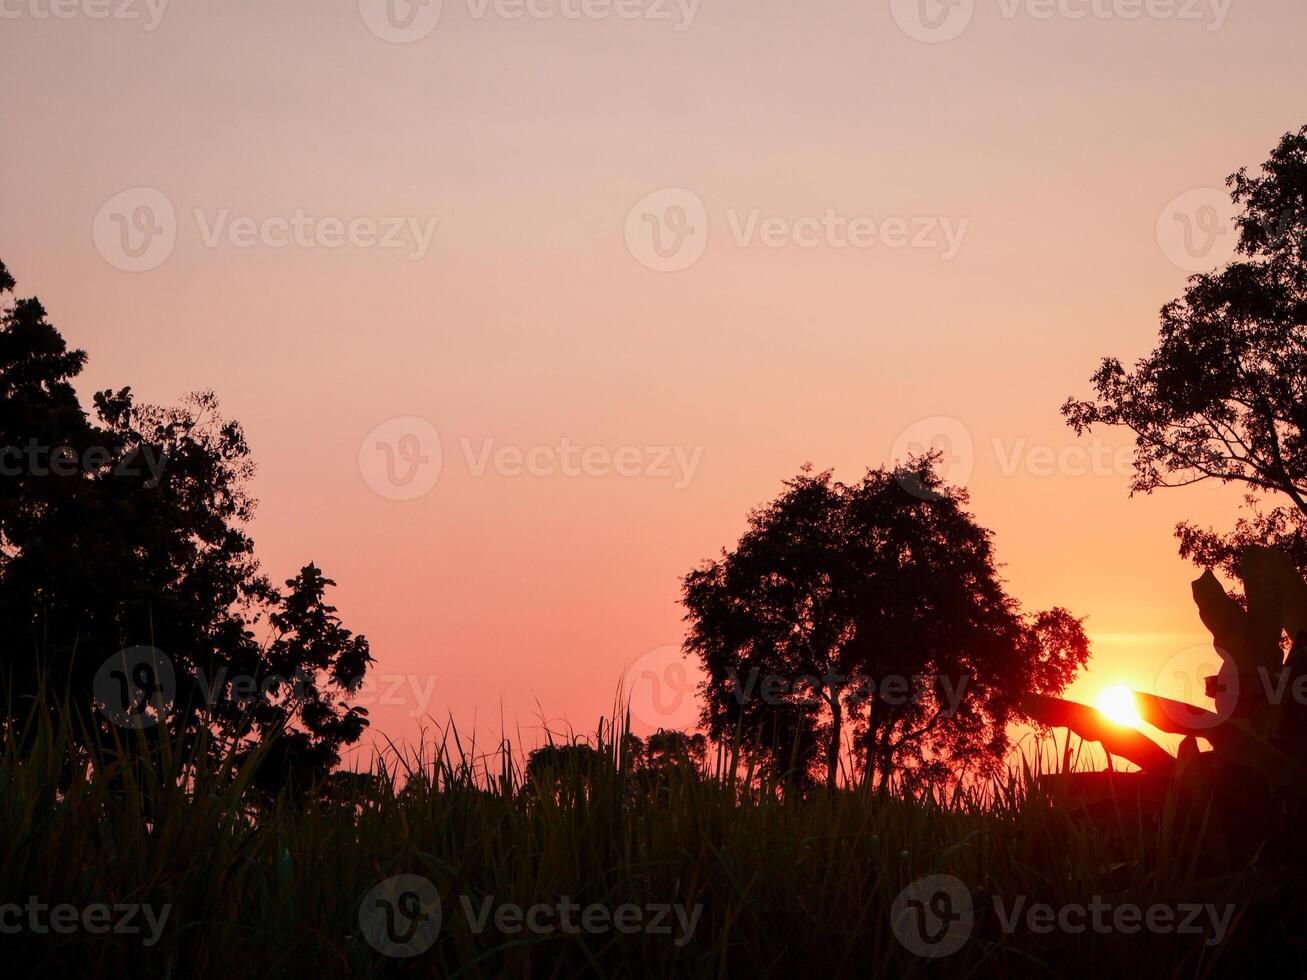 spectaculair zonsondergang over, oranje zon stijgende lijn omhoog over- de horizon foto